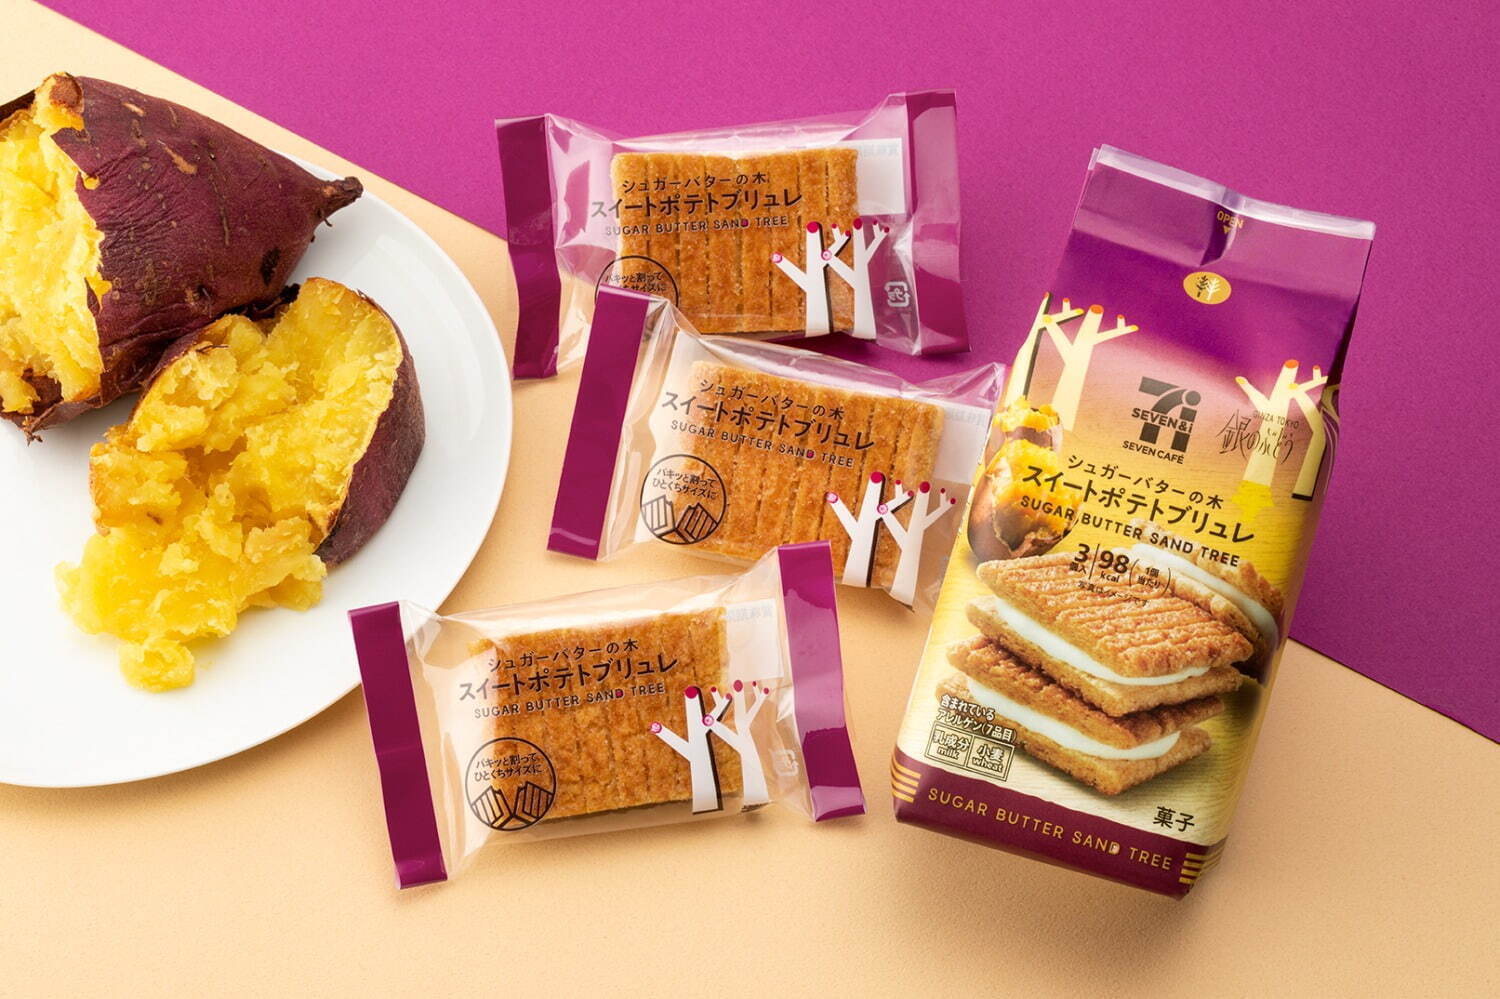 「セブンカフェ  シュガーバターの木  スイートポテトブリュレ」 個包装3個入 267円